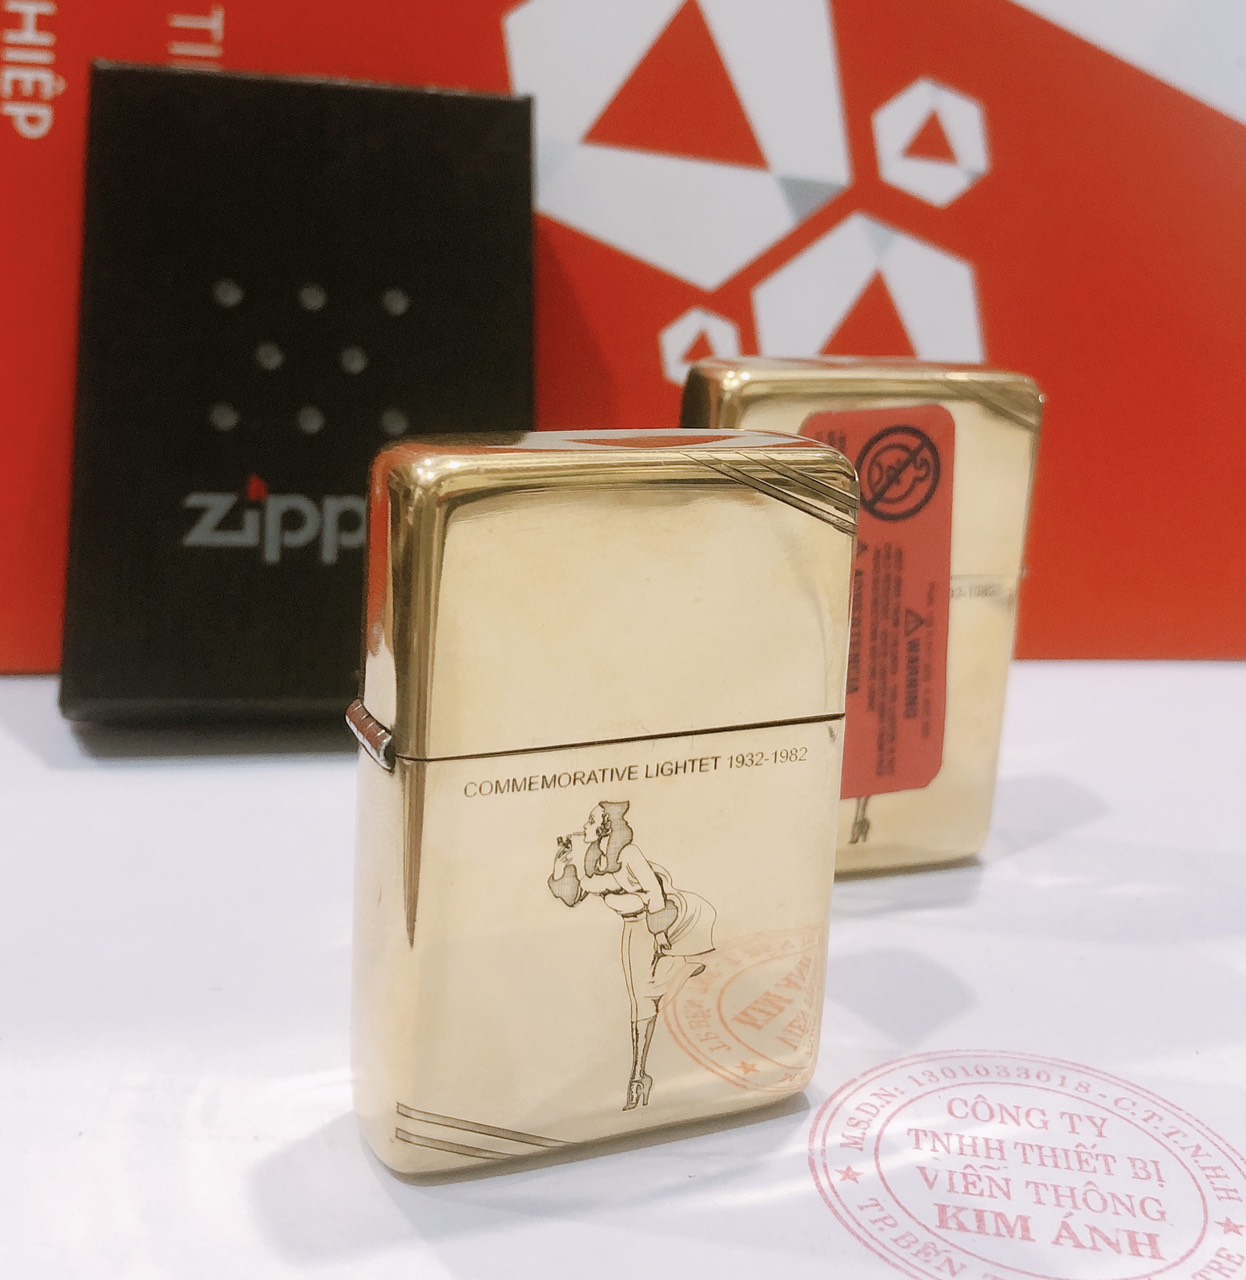 Hộp quẹt Zippo, khắc chìm hình Cô Gái Gió, bản chặt góc, đầu bằng đít bằng, hàng loại 1 vỏ bằng đồng có tem đỏ